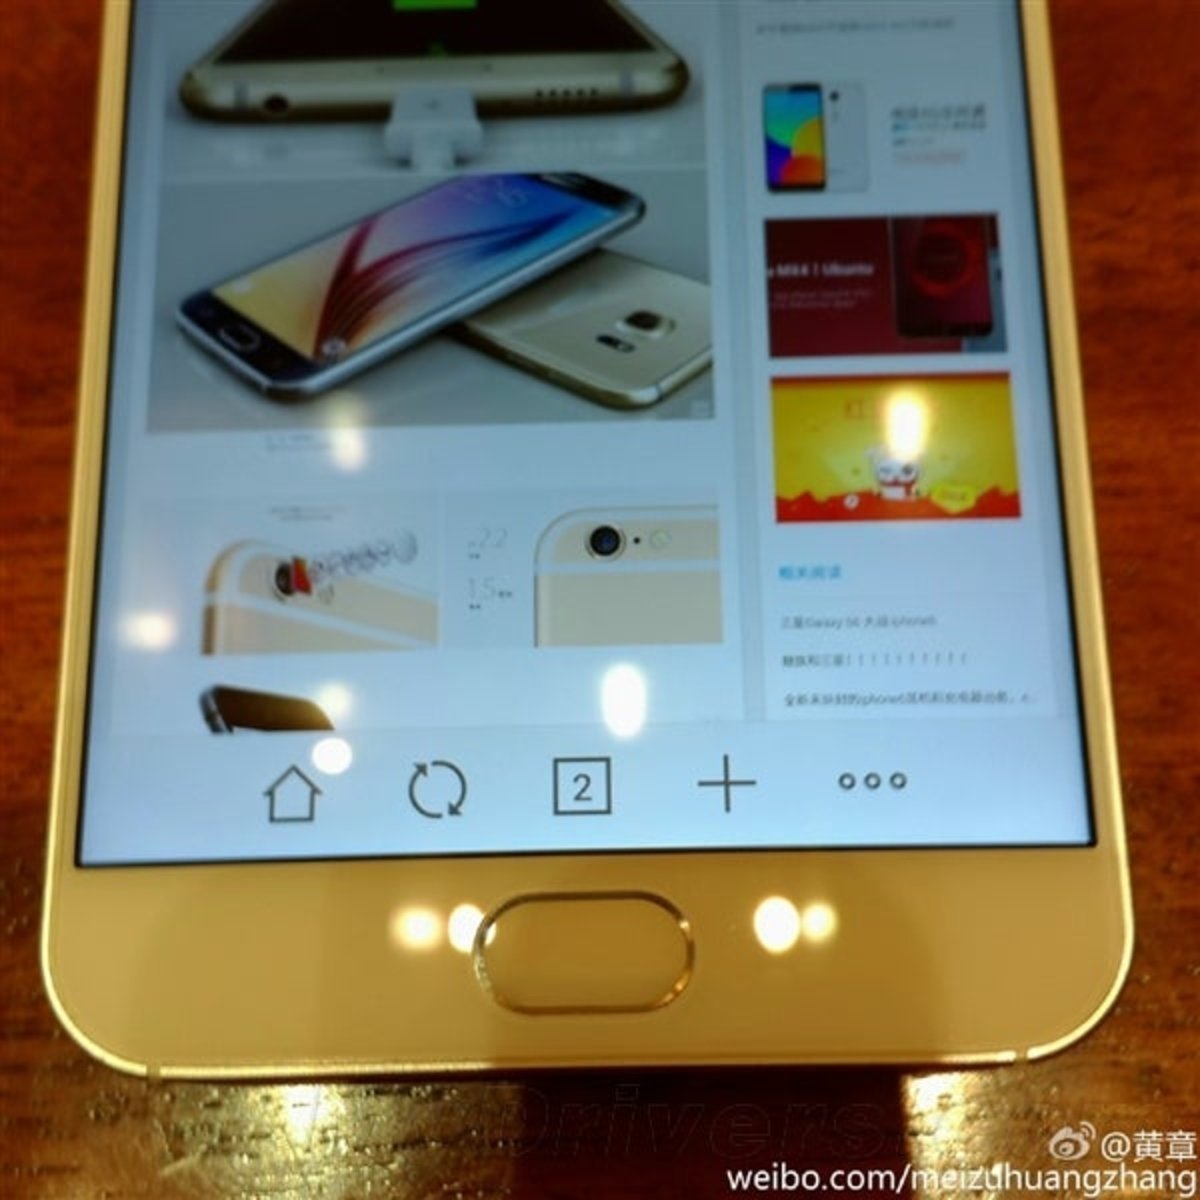 Se filtran imágenes del Meizu MX5, nuevo modelo con lector de huellas en camino